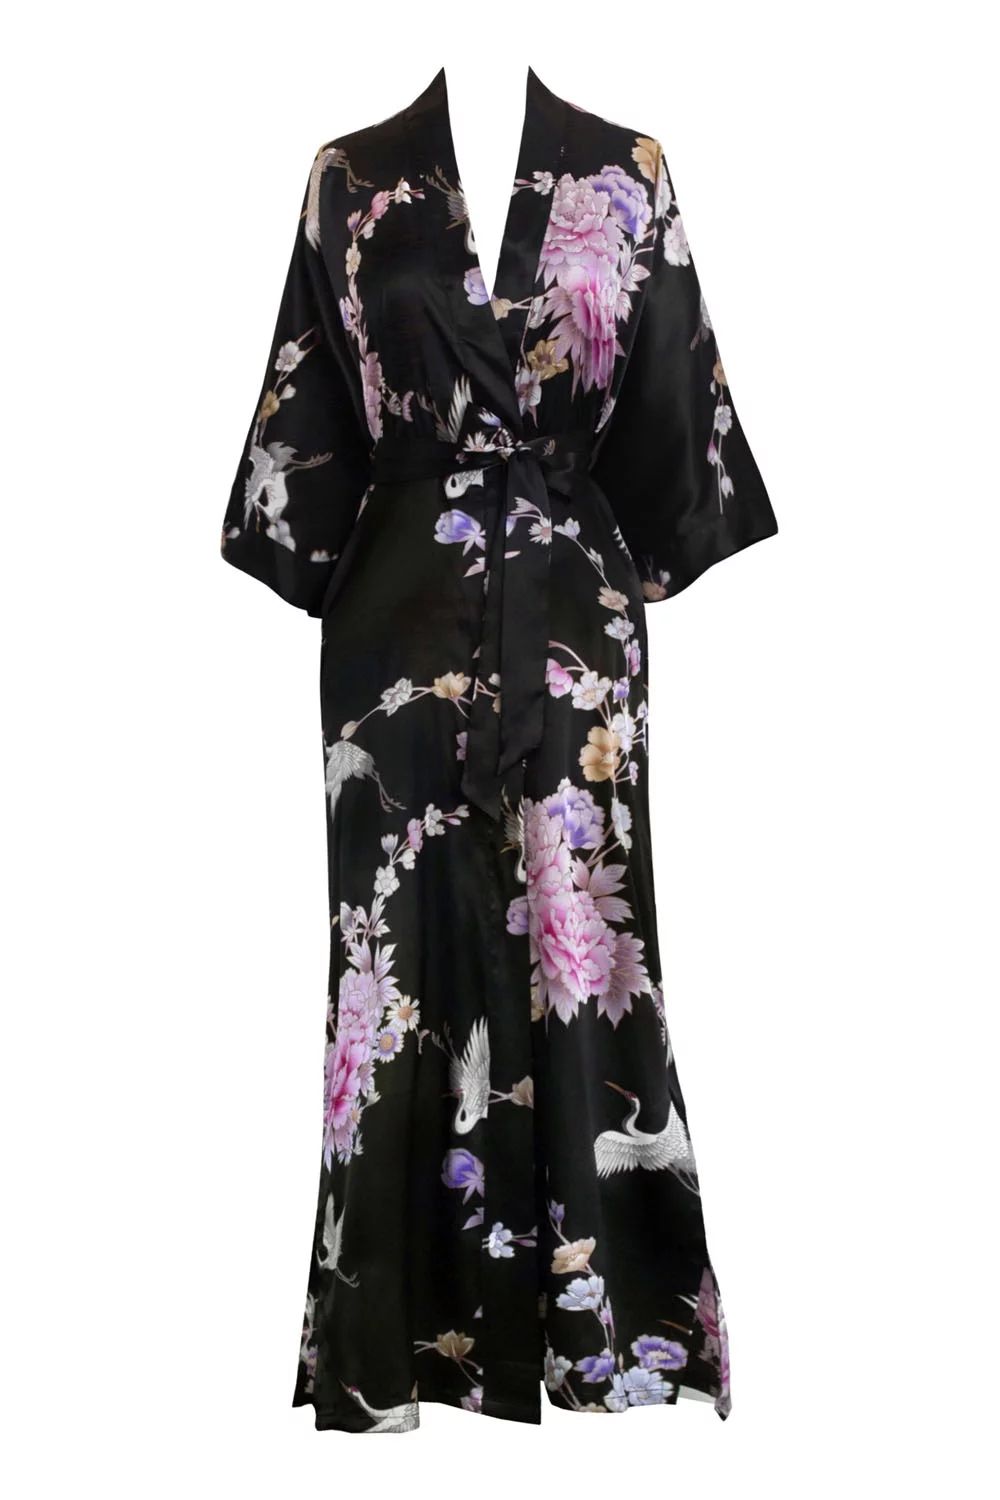 KIM+ONO Long Kimonos Satin Robe for Women, Silk Robe, Womens Kimono Robes - Floral - Chrysanthemu... | Walmart (US)